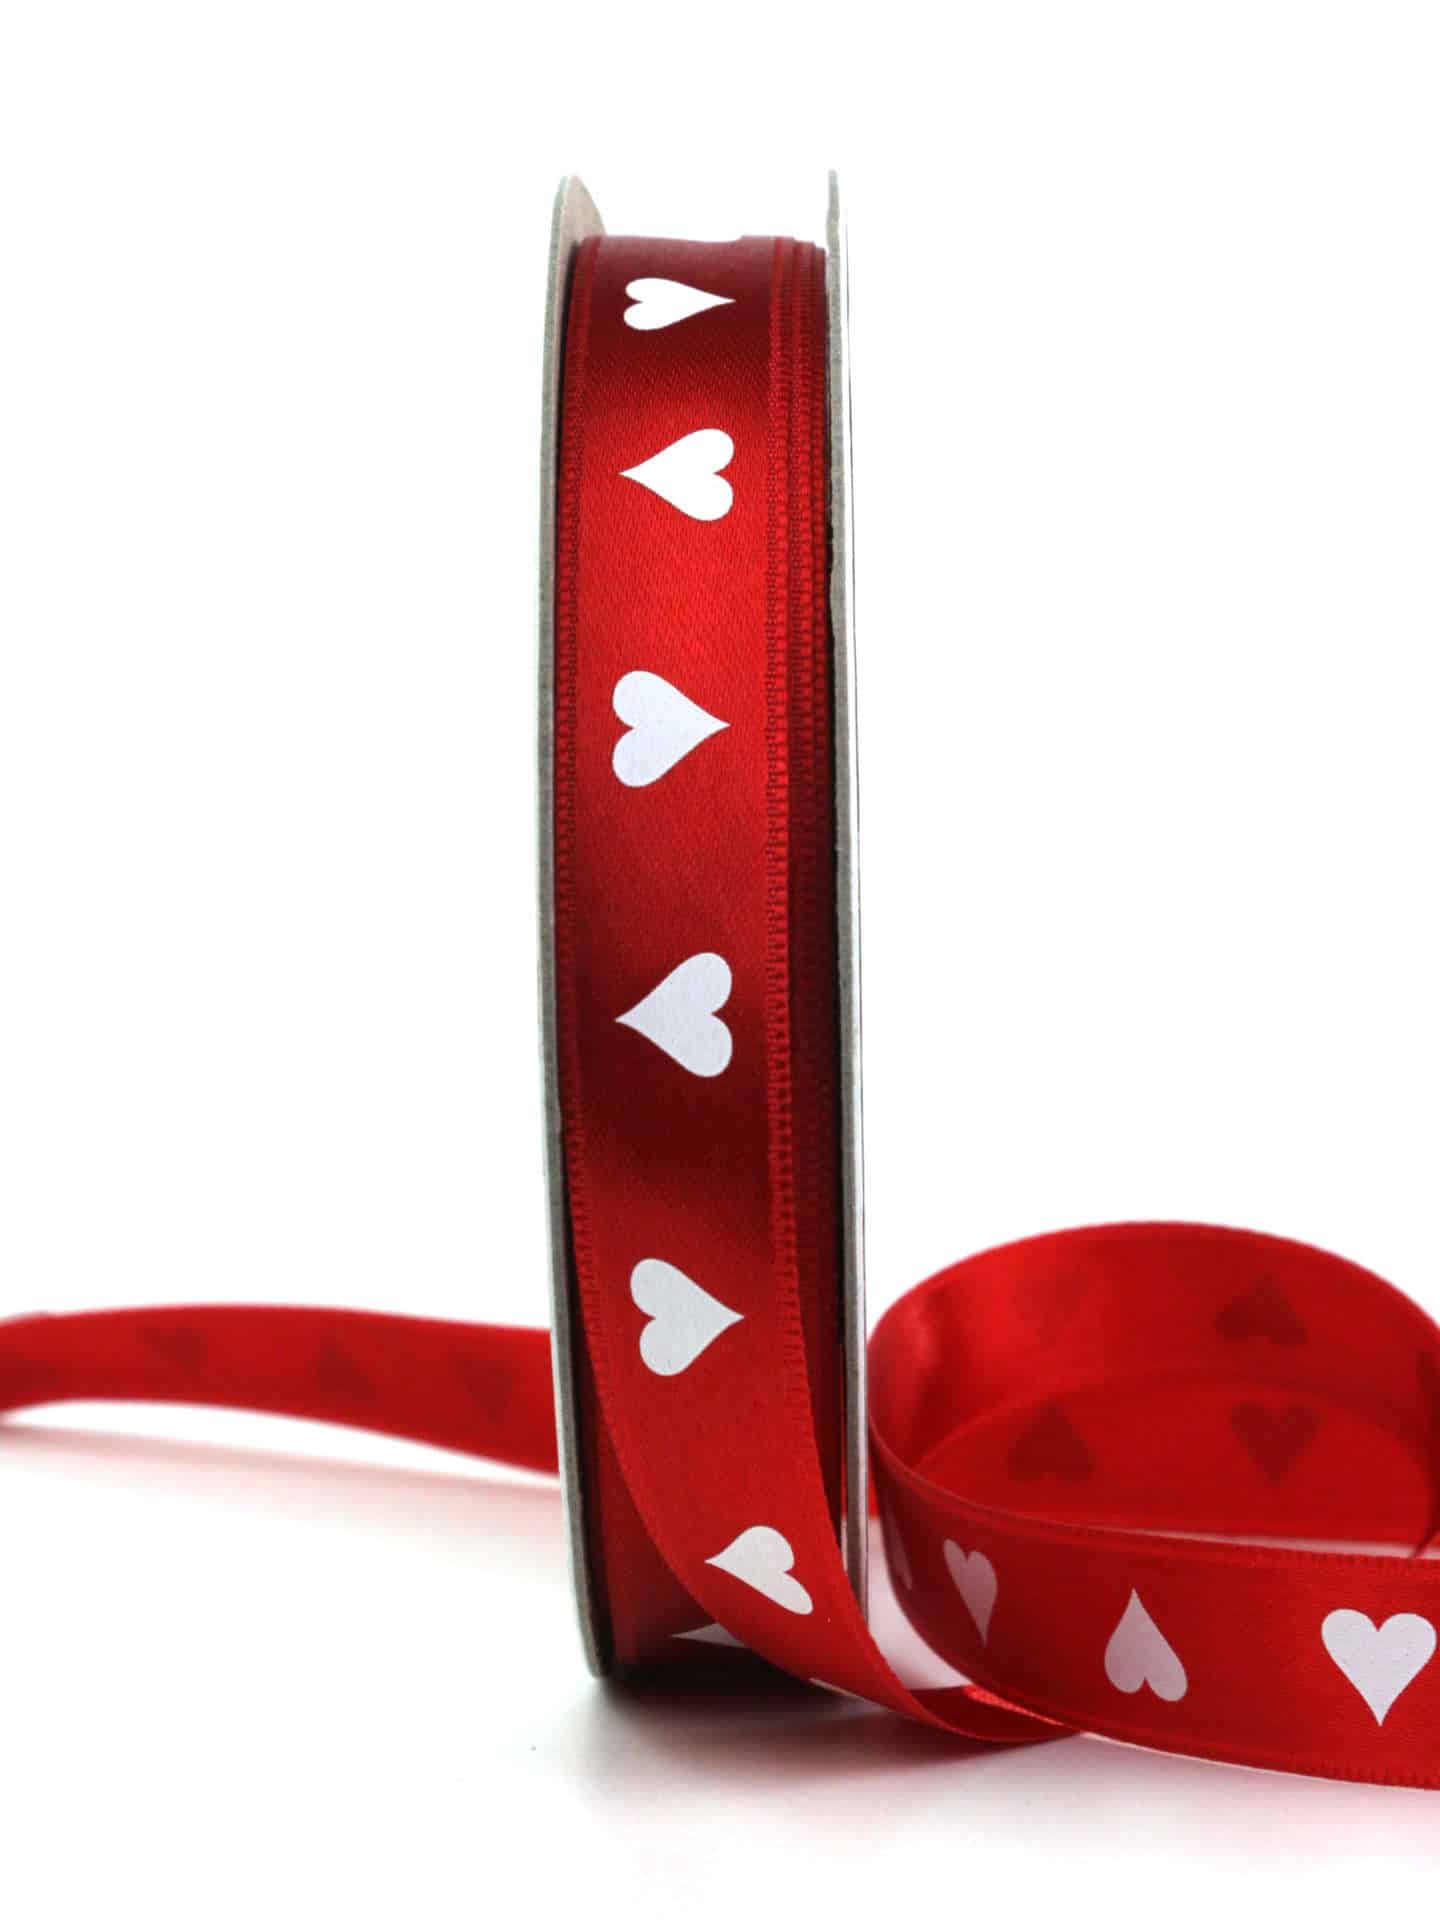 Geschenkband mit Herzen, rot, 15 mm breit - valentinstag, geschenkband, geschenkband-gemustert, geschenkband-mit-herzen, geschenkband-fuer-anlaesse, muttertag, anlasse